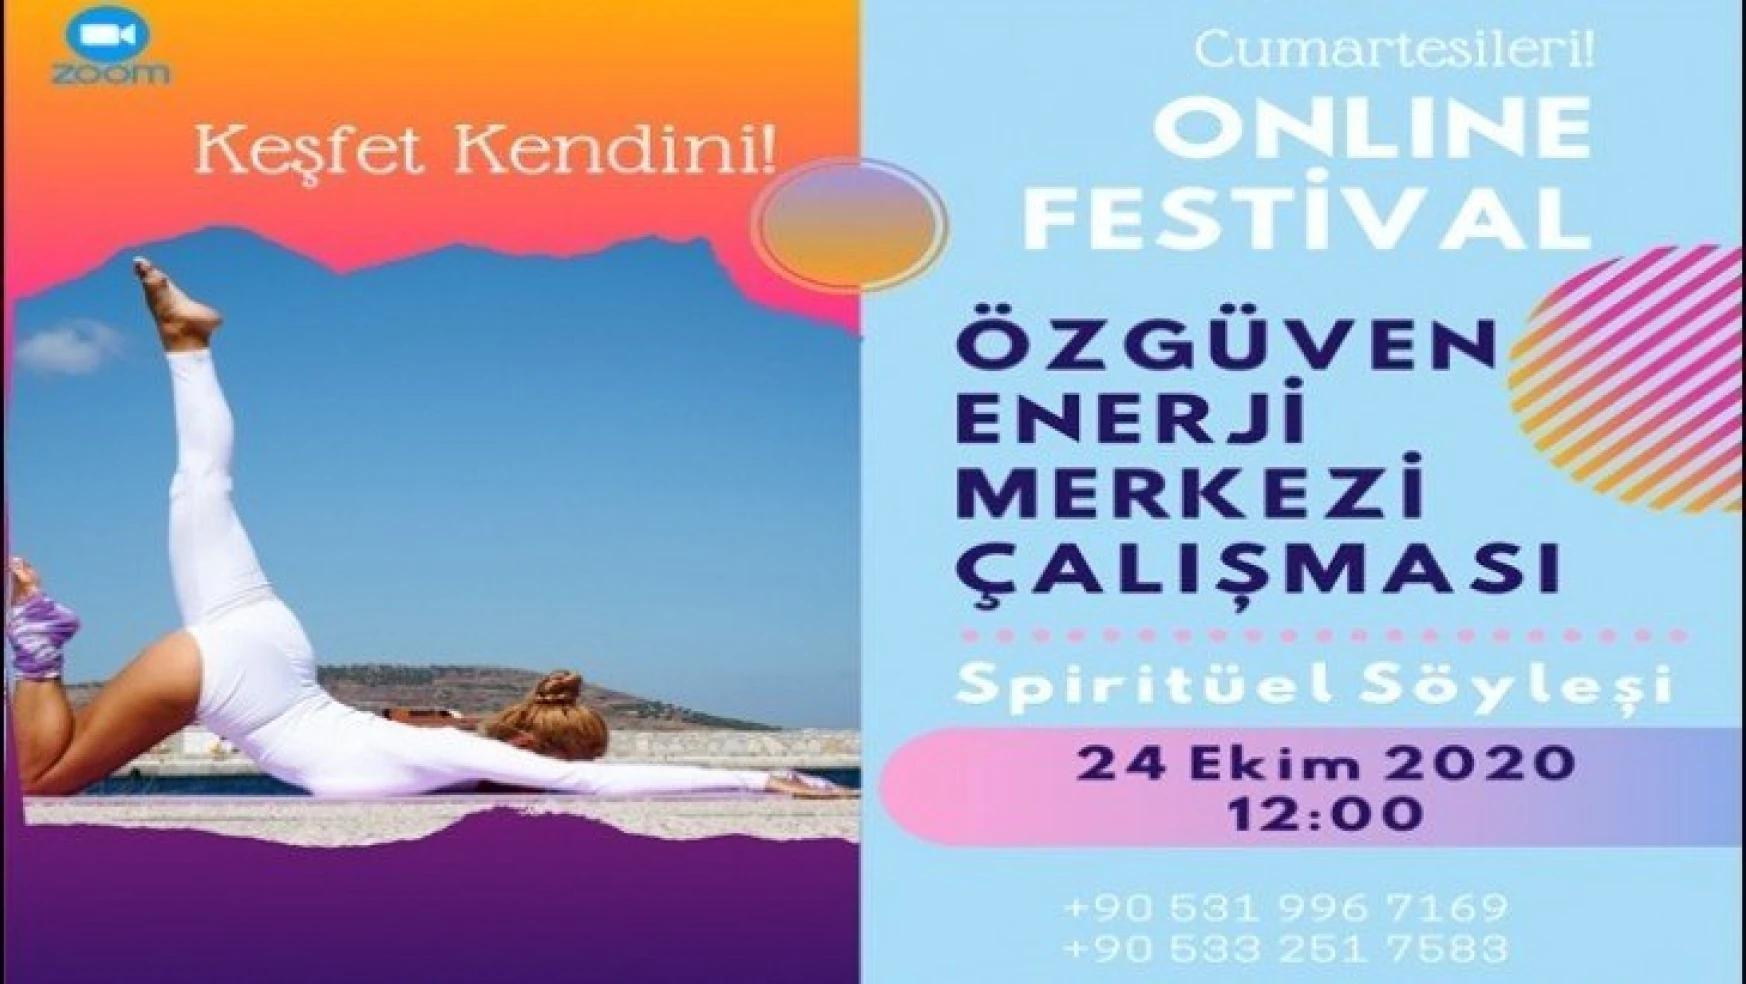 Covıd-19'a Karşı Dayanıklılığı Artıran Festival